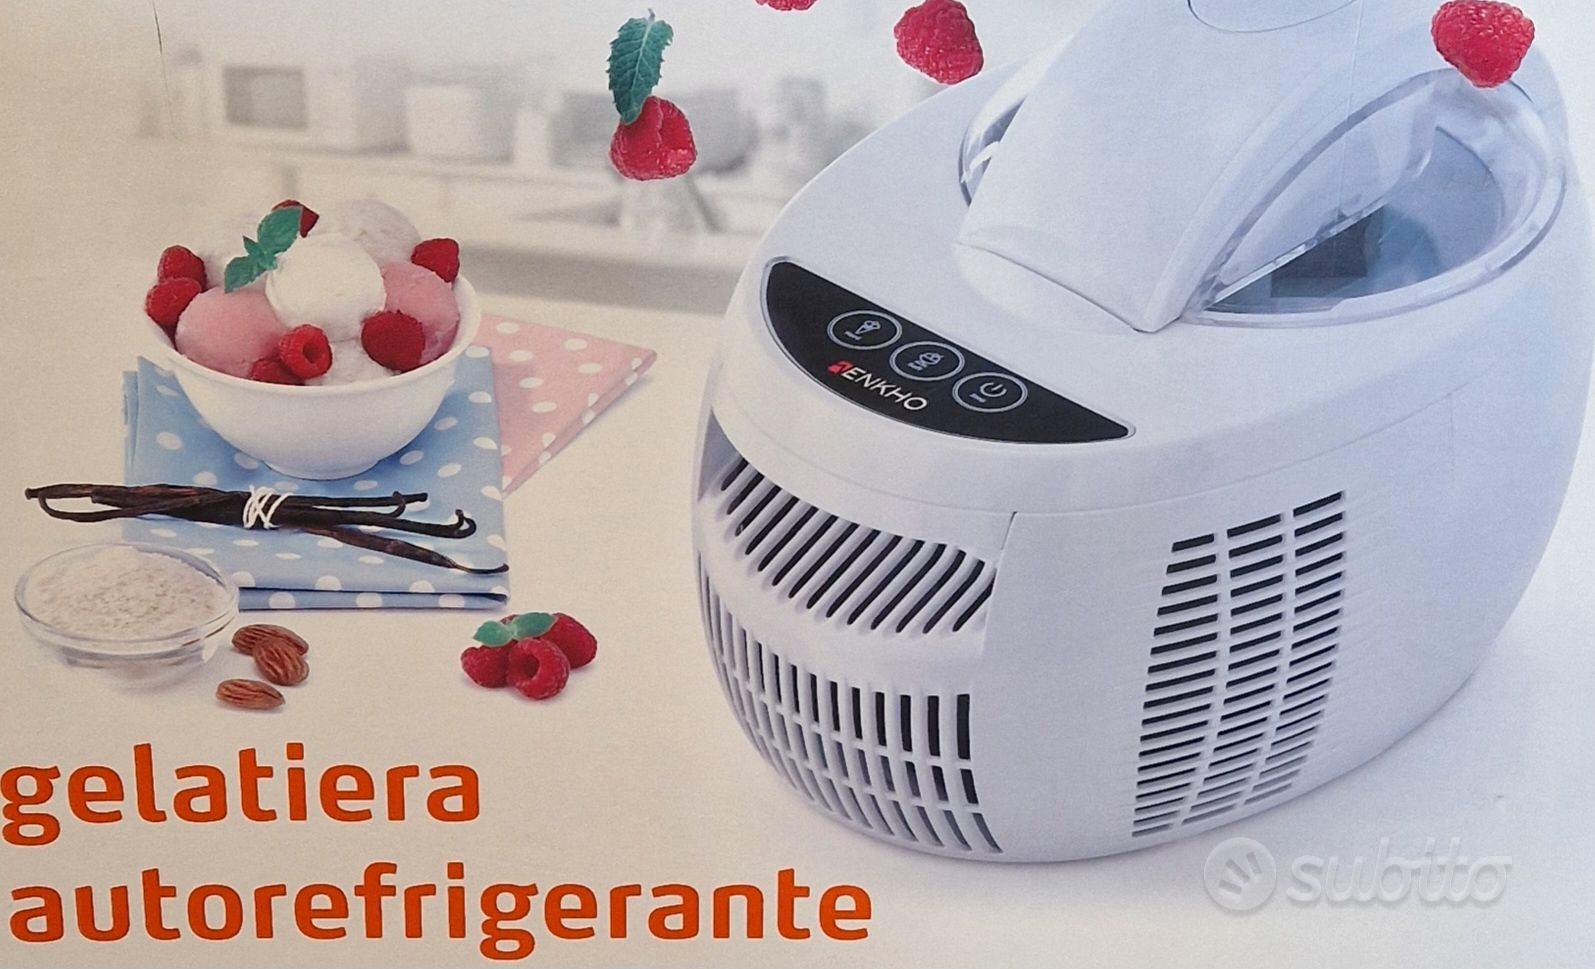 Gelatiera Autorefrigerante - Elettrodomestici In vendita a Benevento